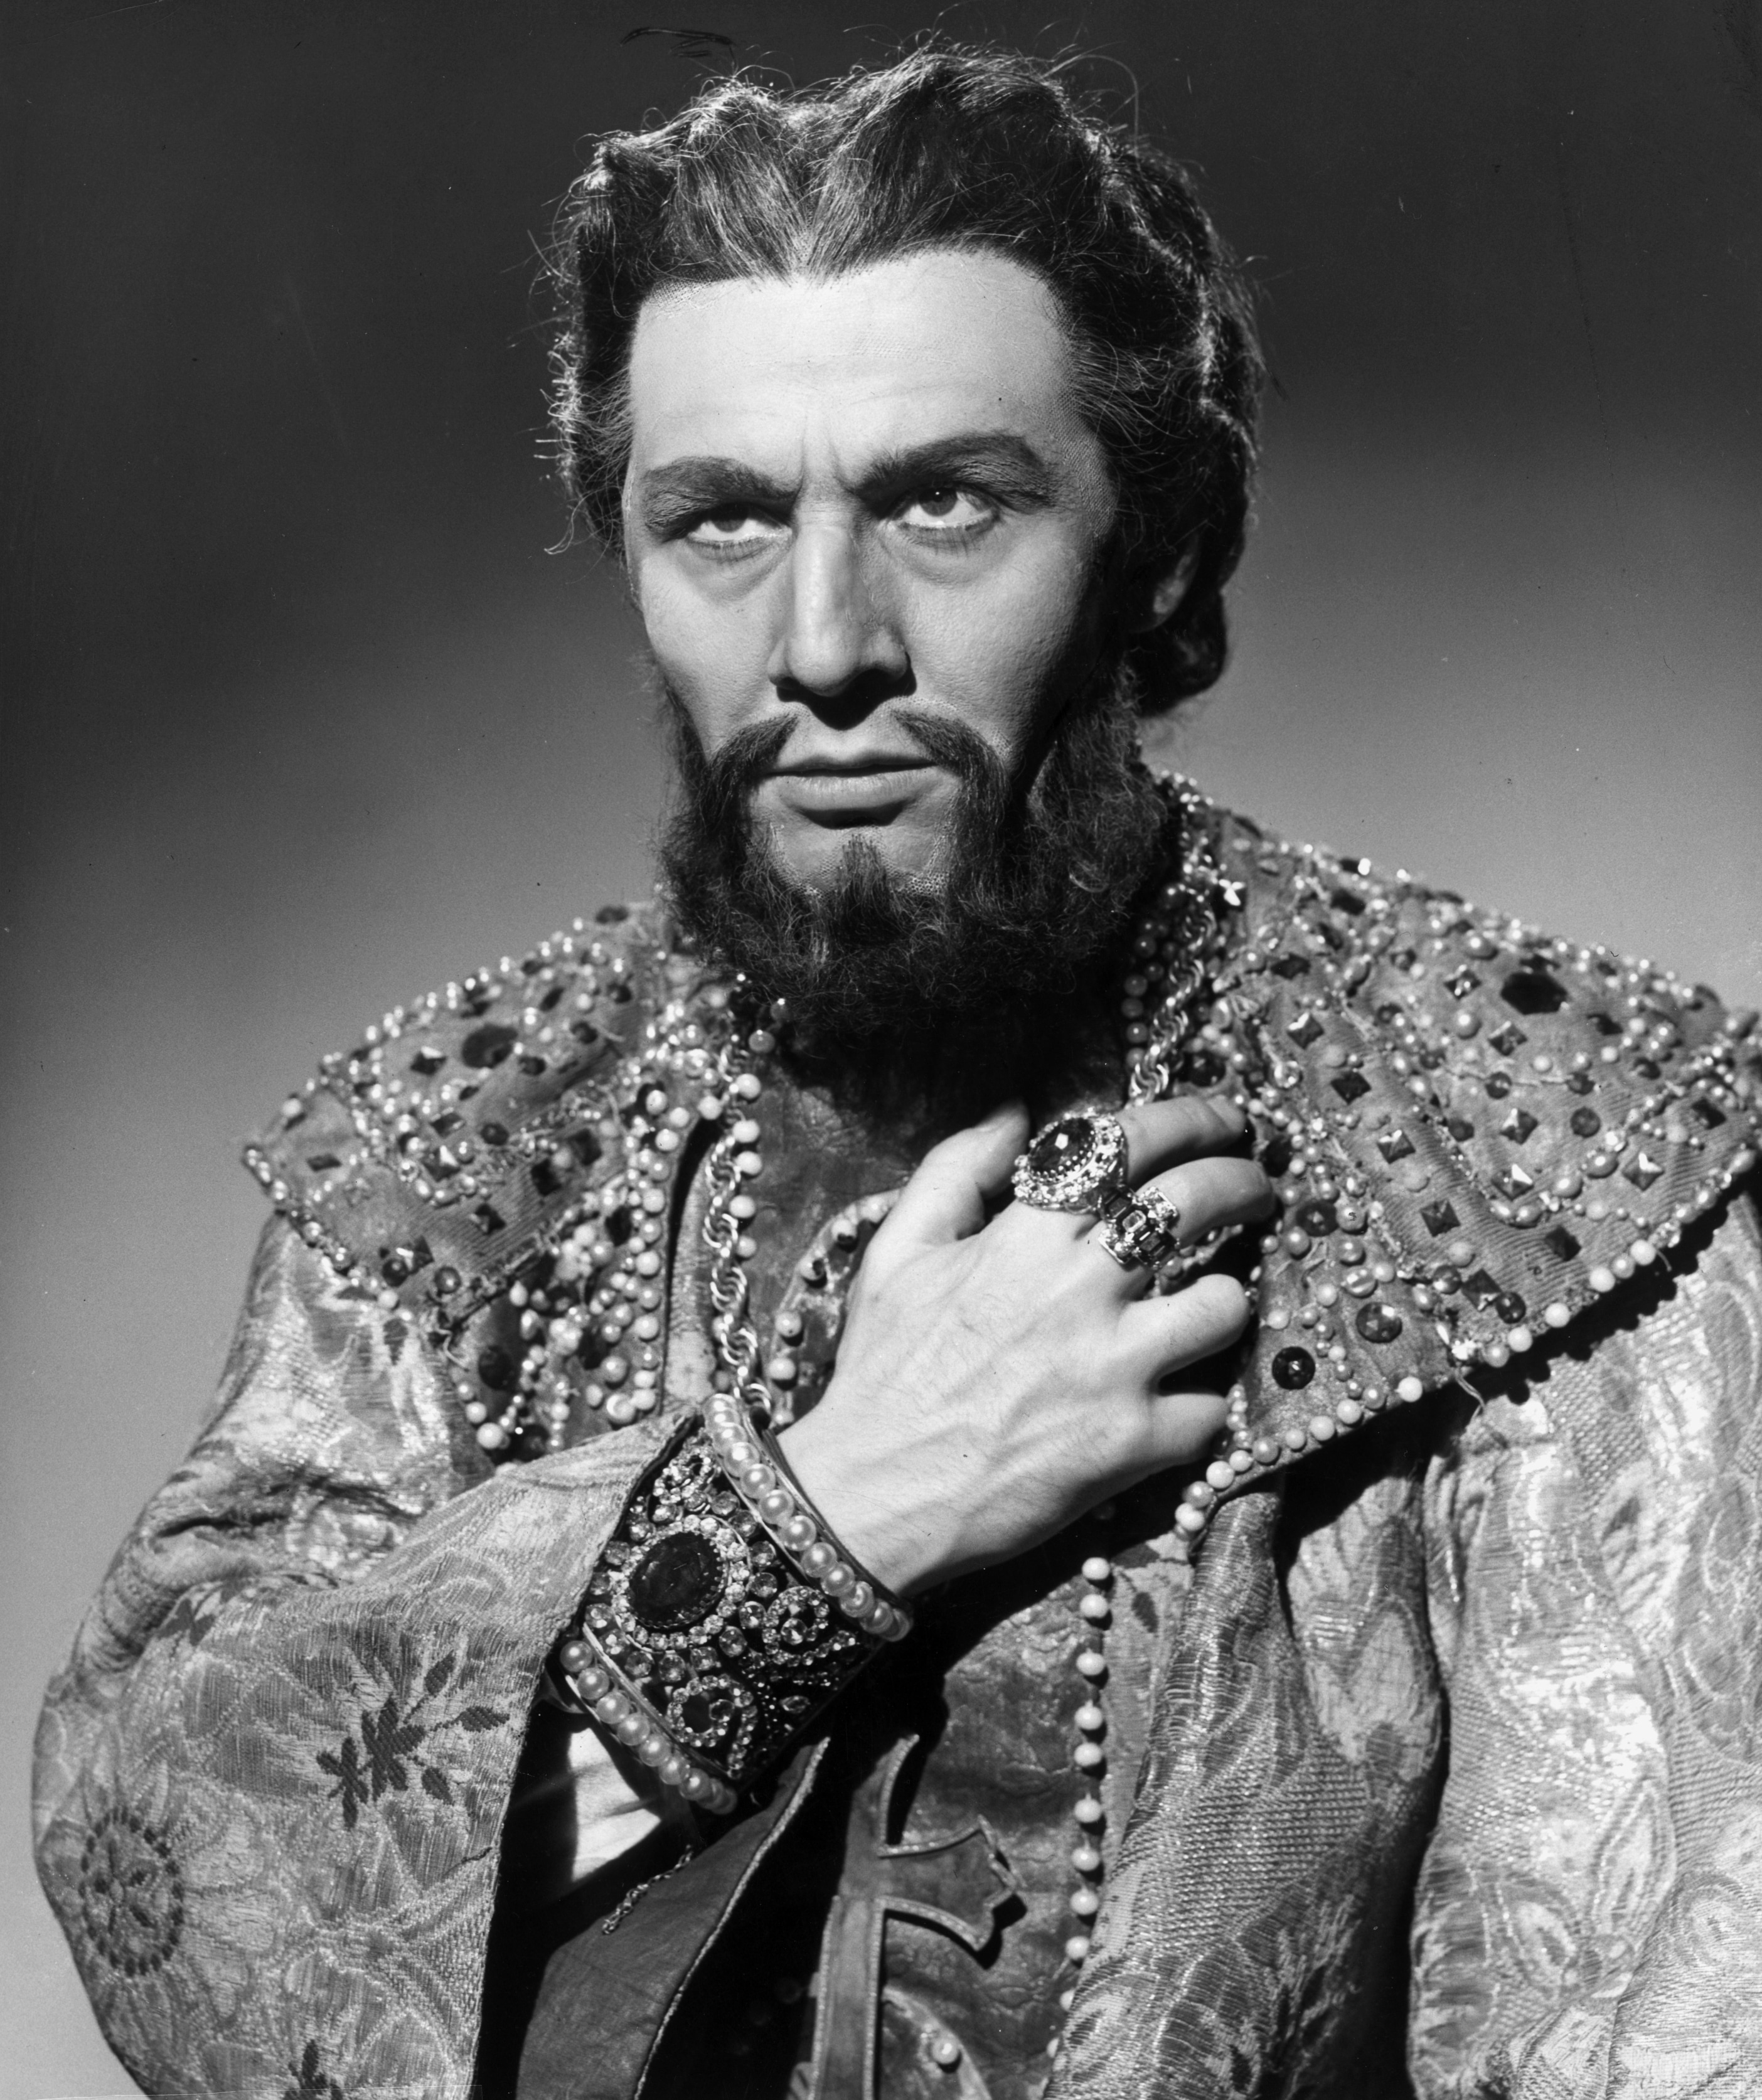 Cesare Siepi, cantante lirico italiano, nel costume di scena per "Boris Godunov", 1955 circa.